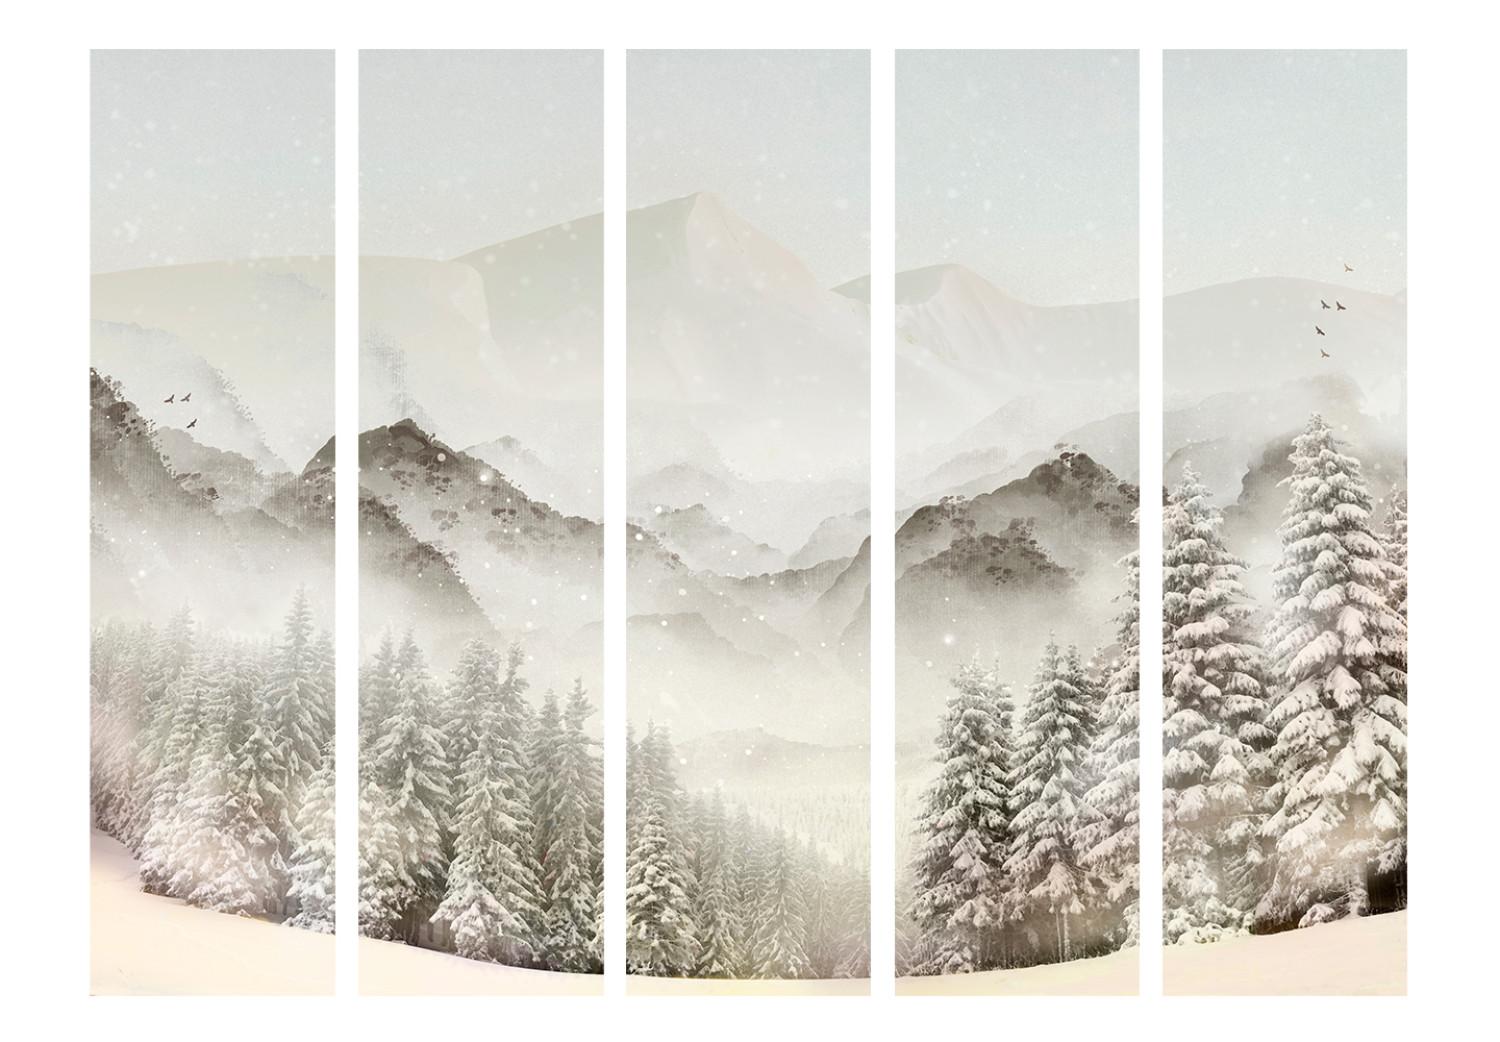 Biombo decorativo Cuenca nevada II (5 piezas) - paisaje invernal de montañas y árboles